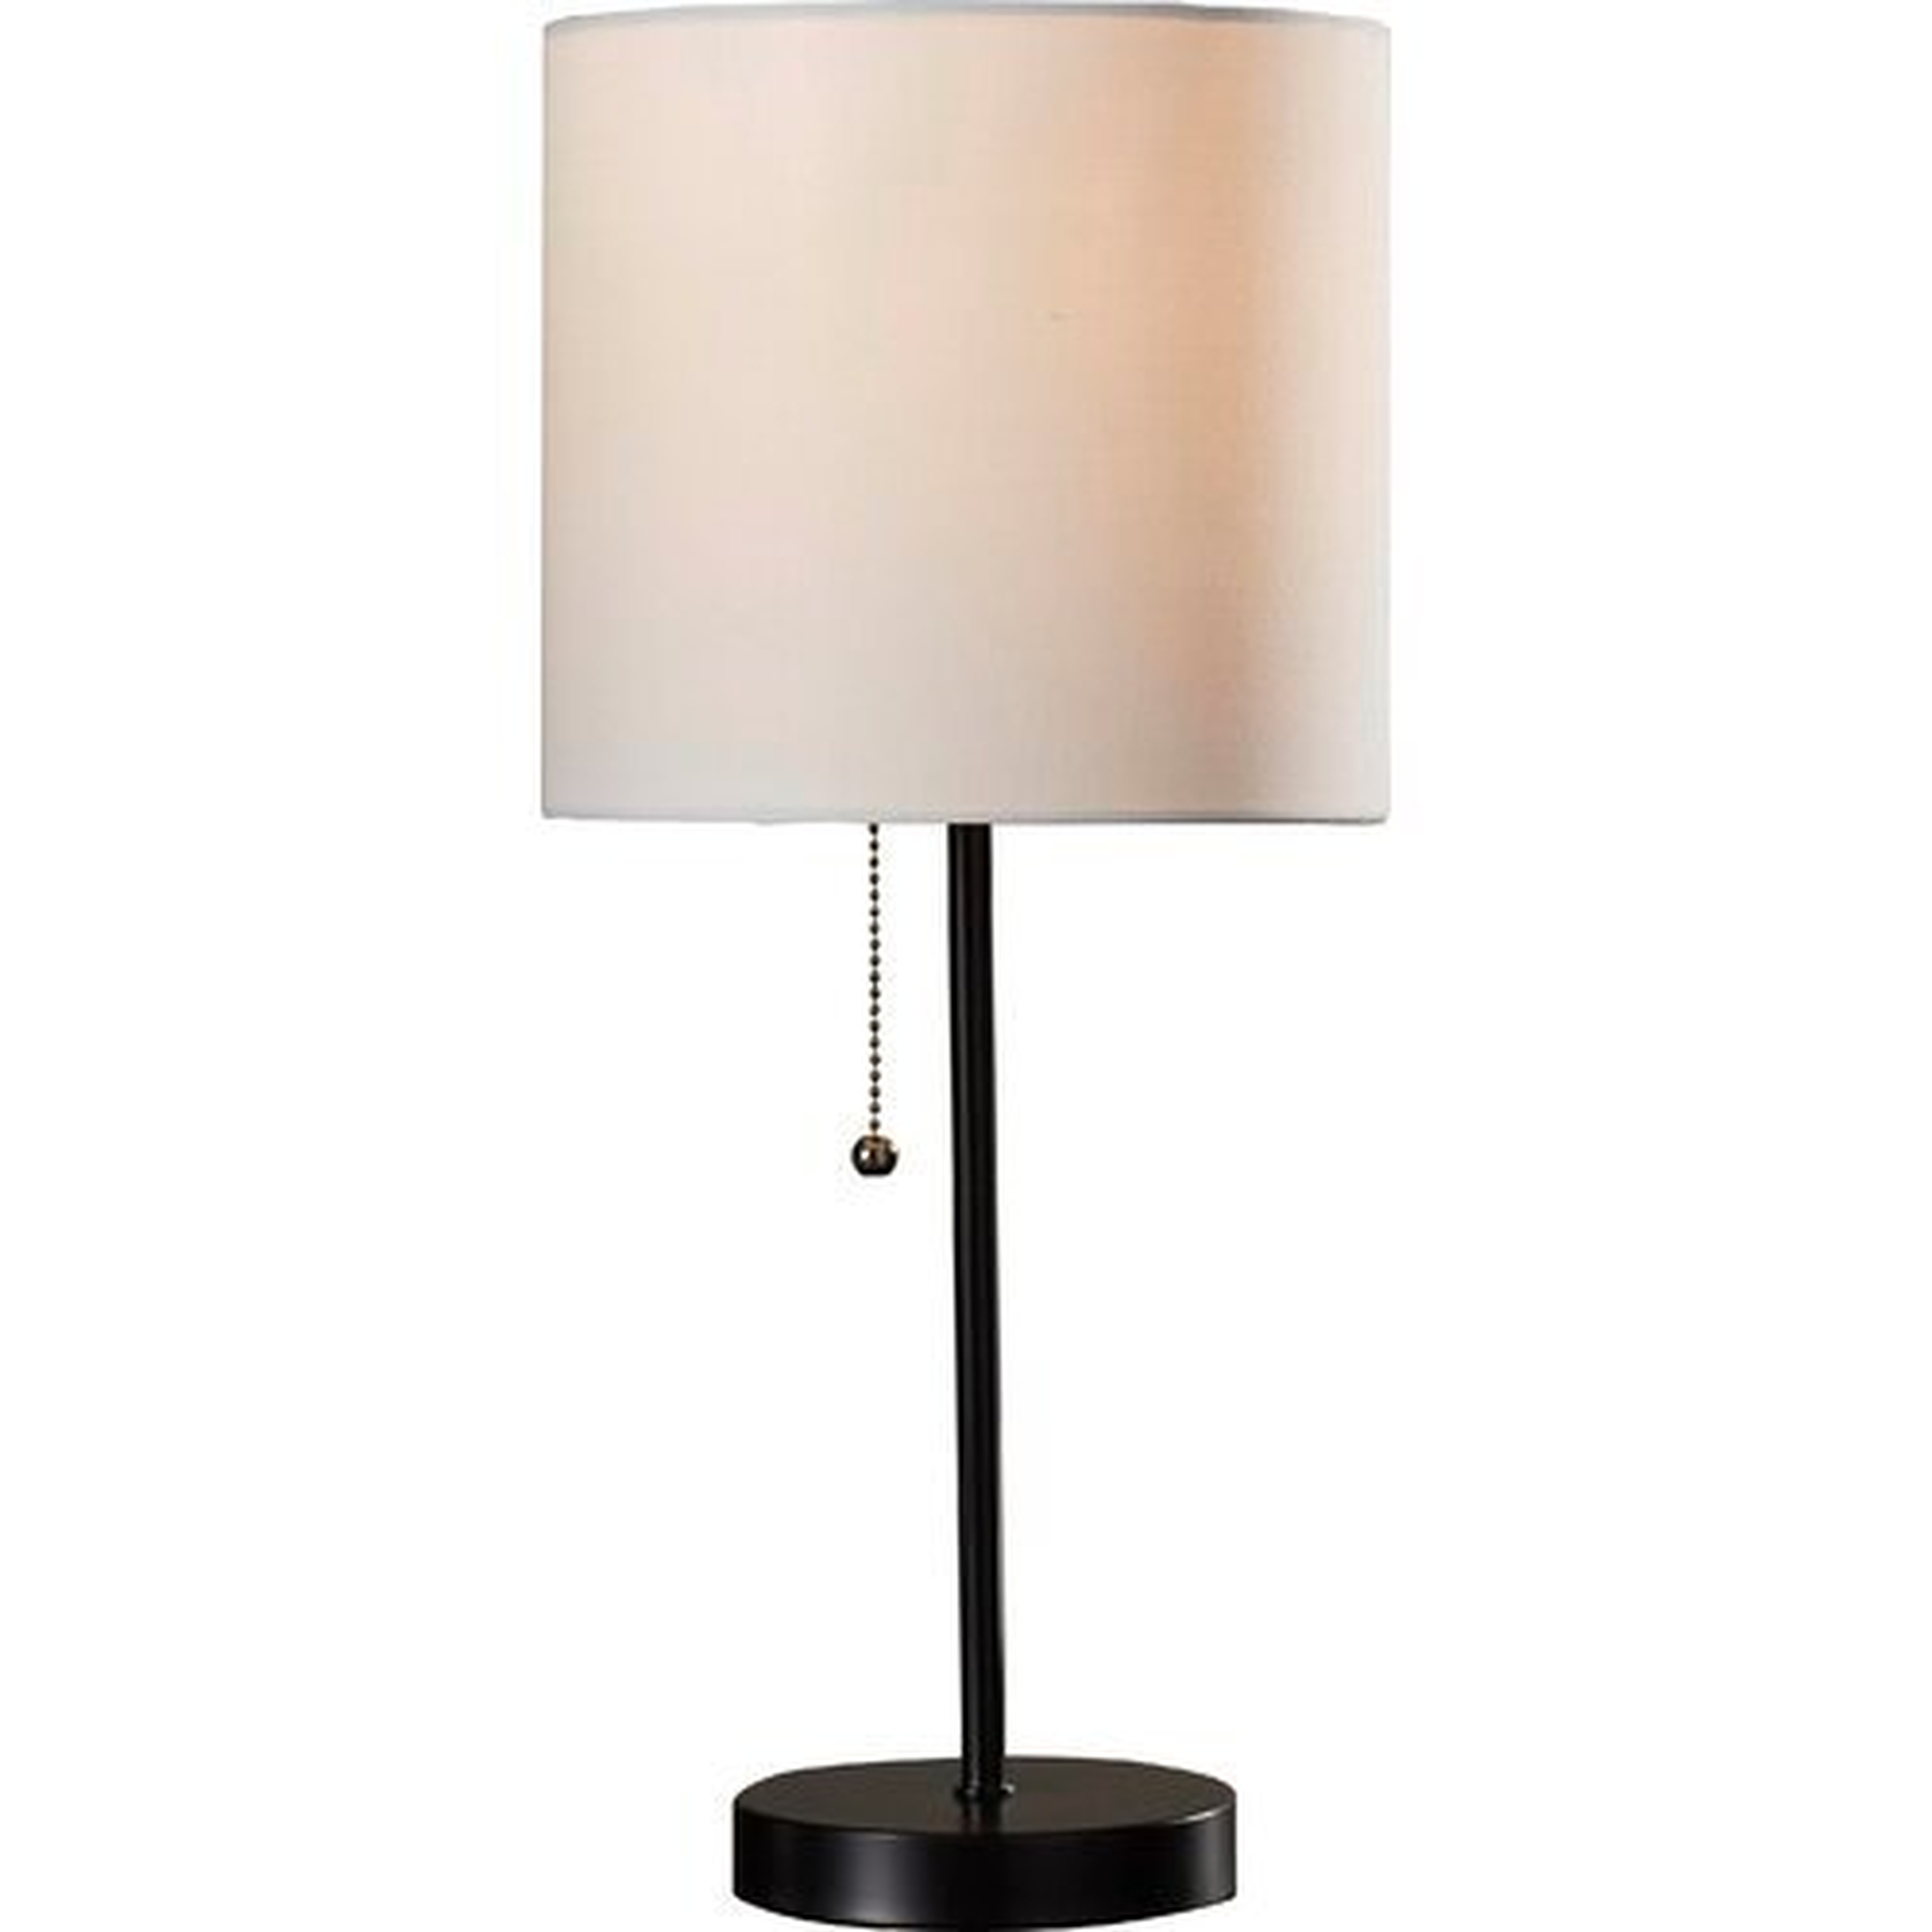 Margie 19" Table Lamp - Wayfair